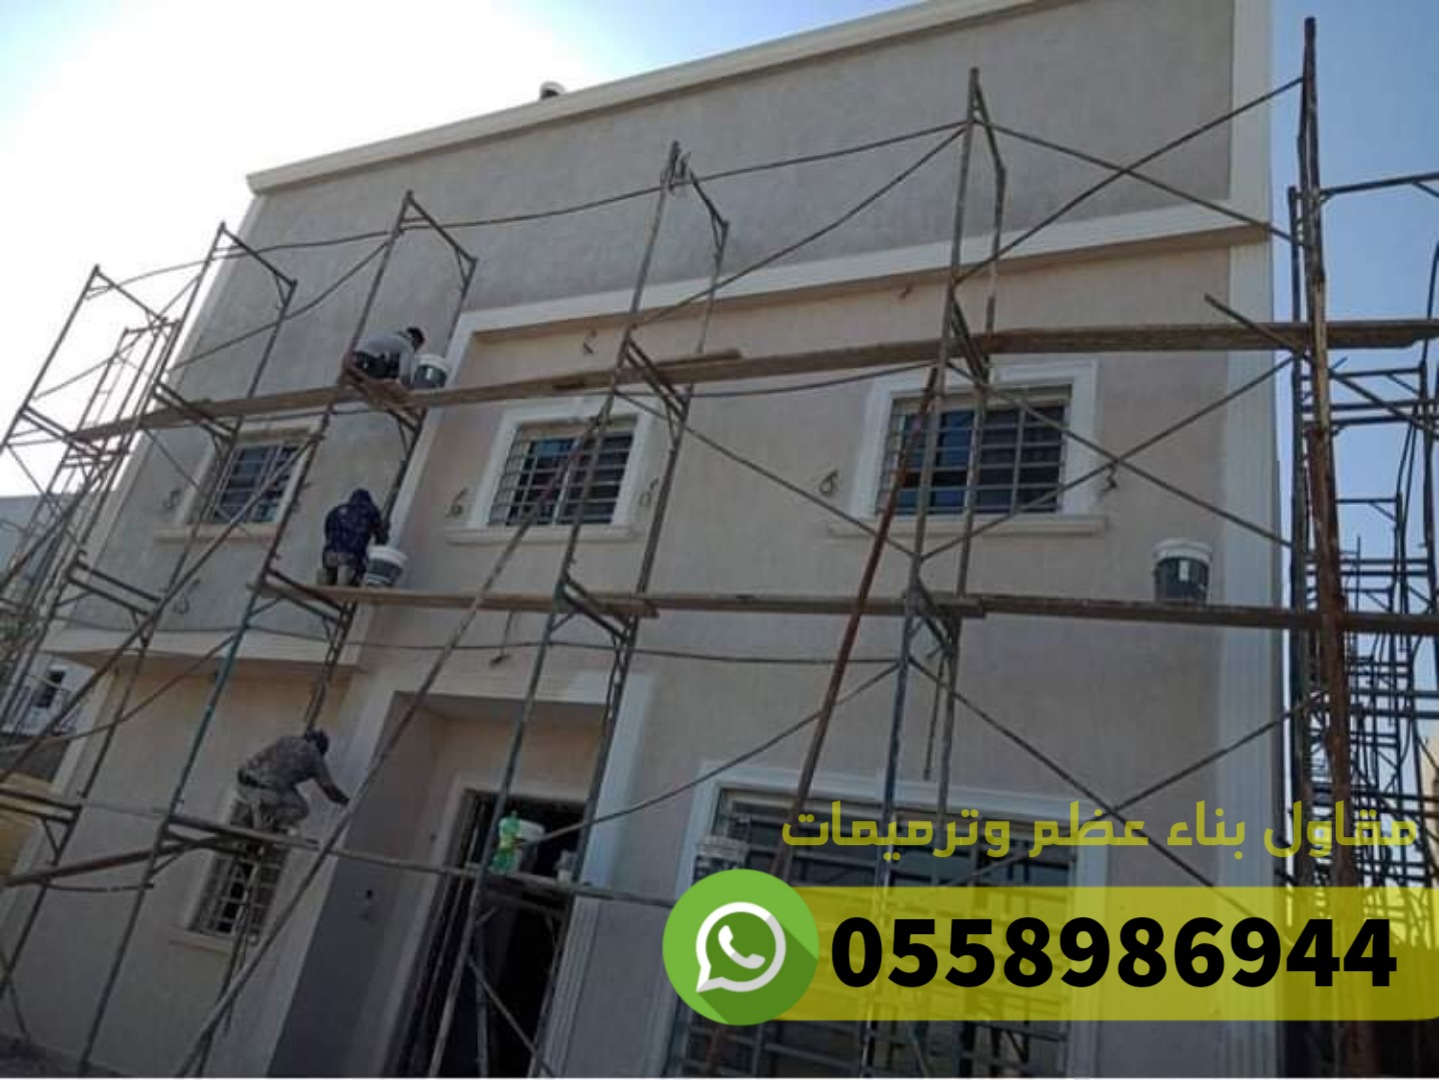 ترميم منازل و بناء عظم في جدة, 0558986944 P_2486mzdk81